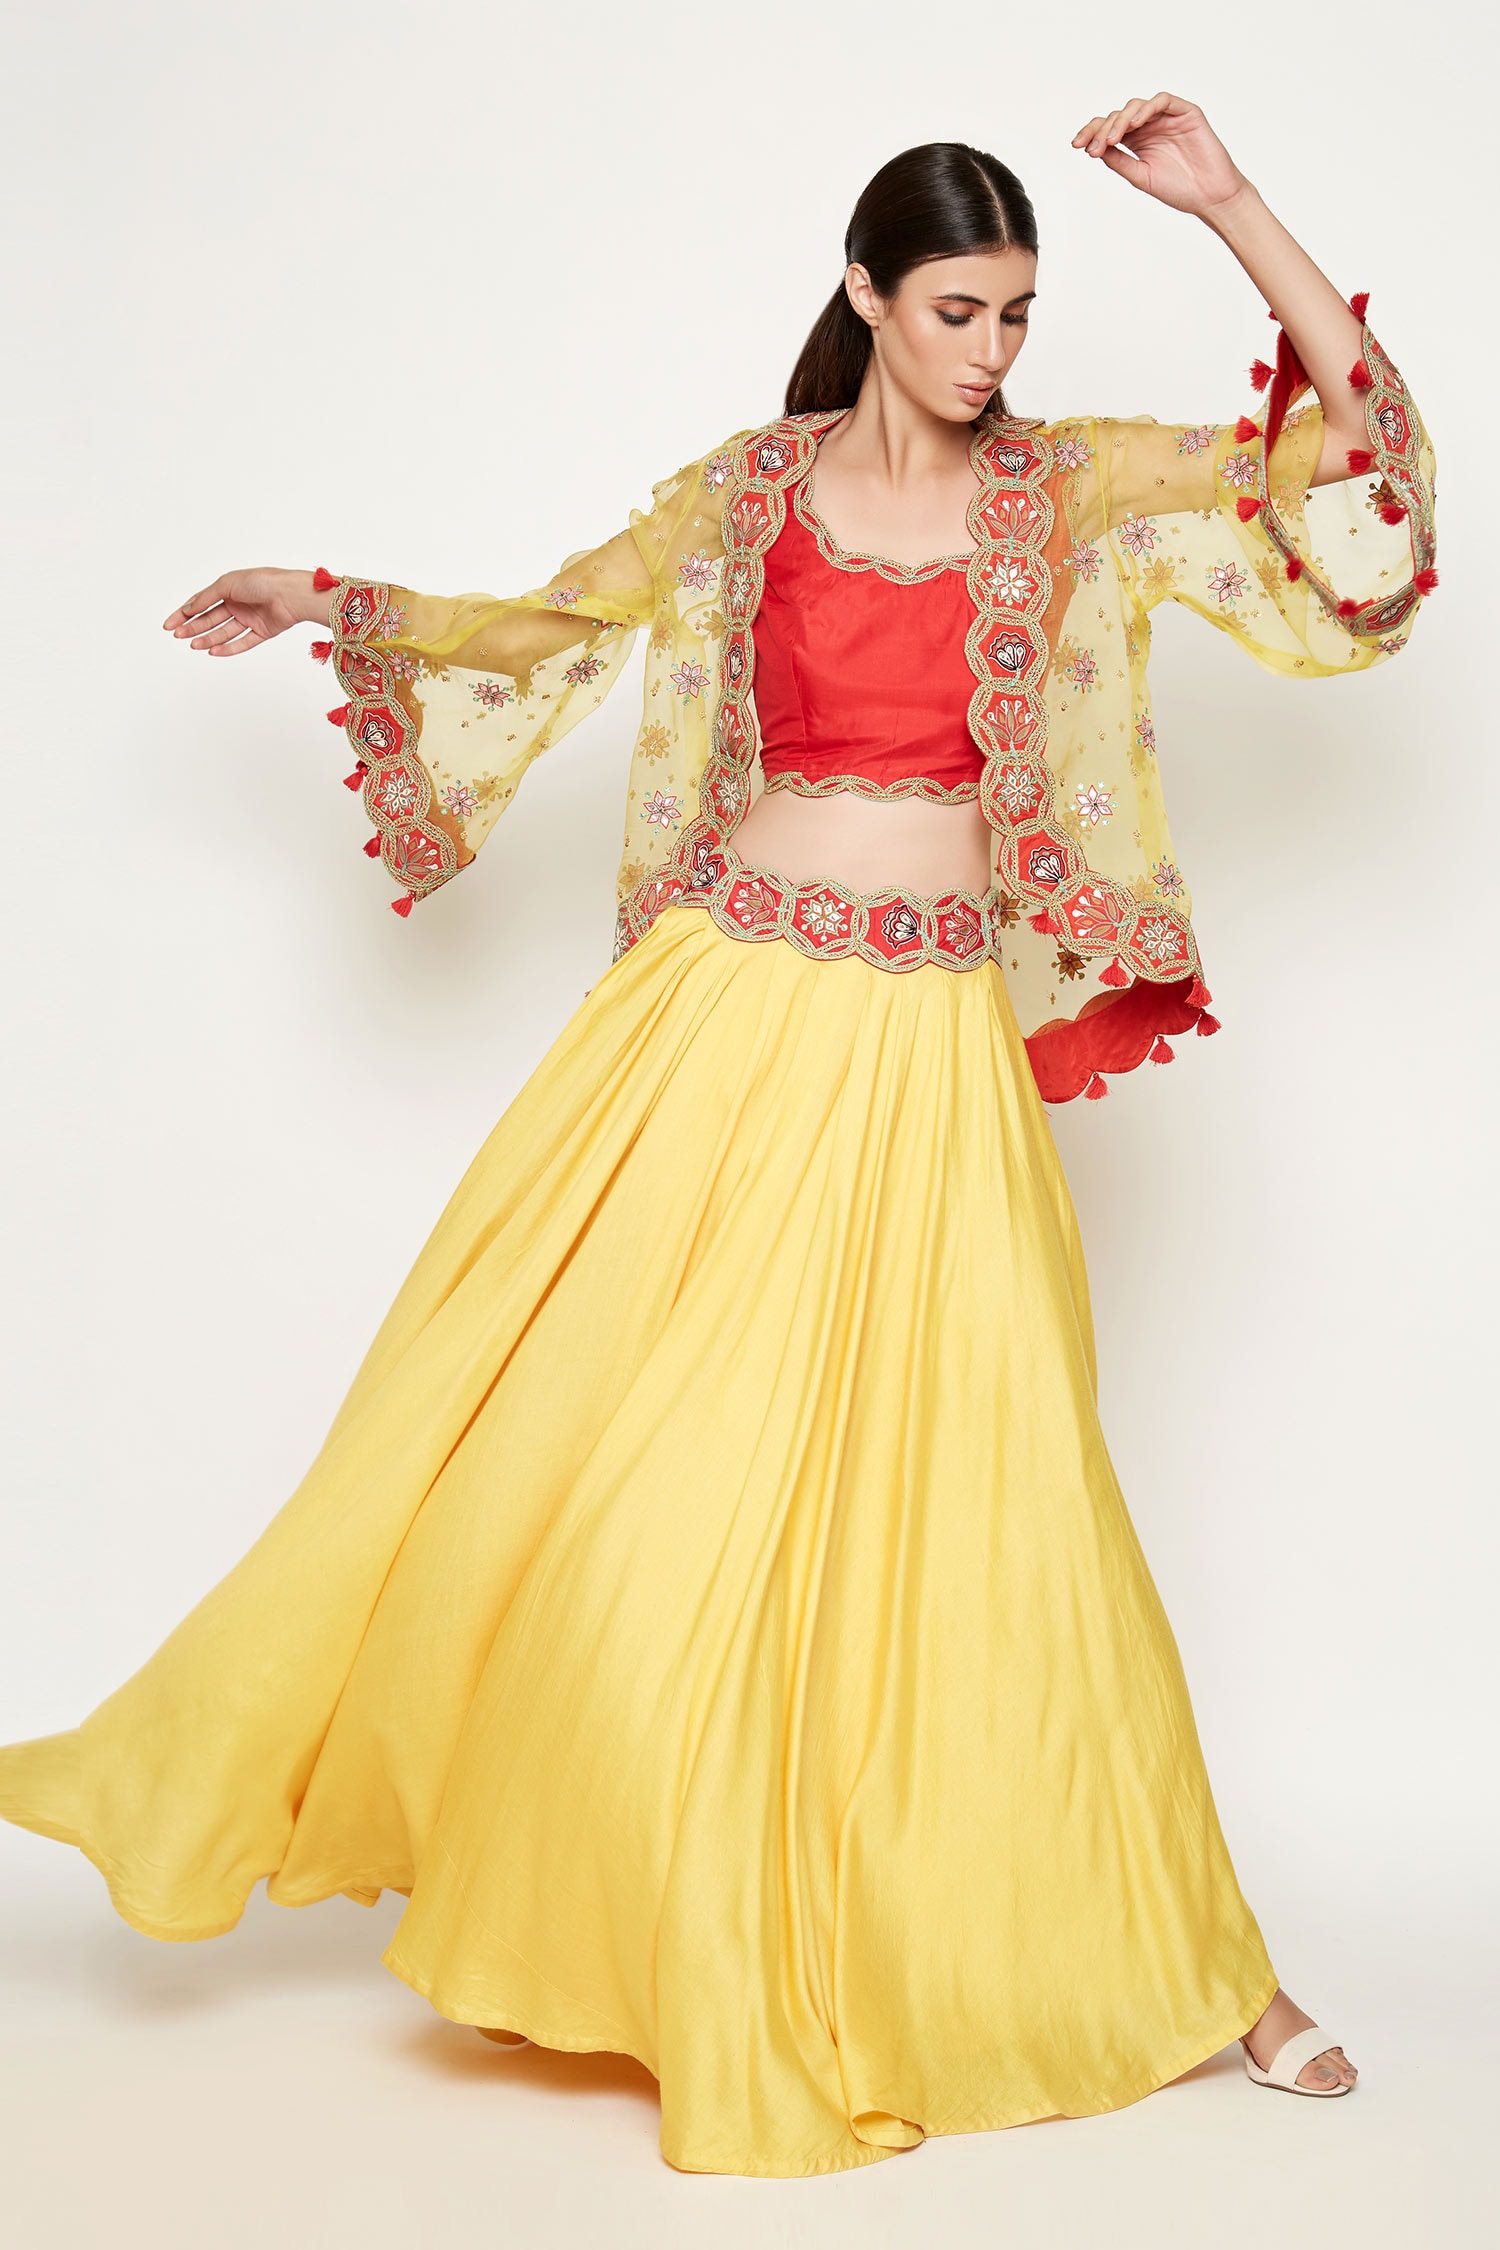 Buy Yellow Lehenga Choli With Jacket, Ready to Wear Stitched Lehenga Choli,  Indian Wedding Mehendi Sangeet Haldi Party Wear Lehenga Blouse Online in  India - Etsy